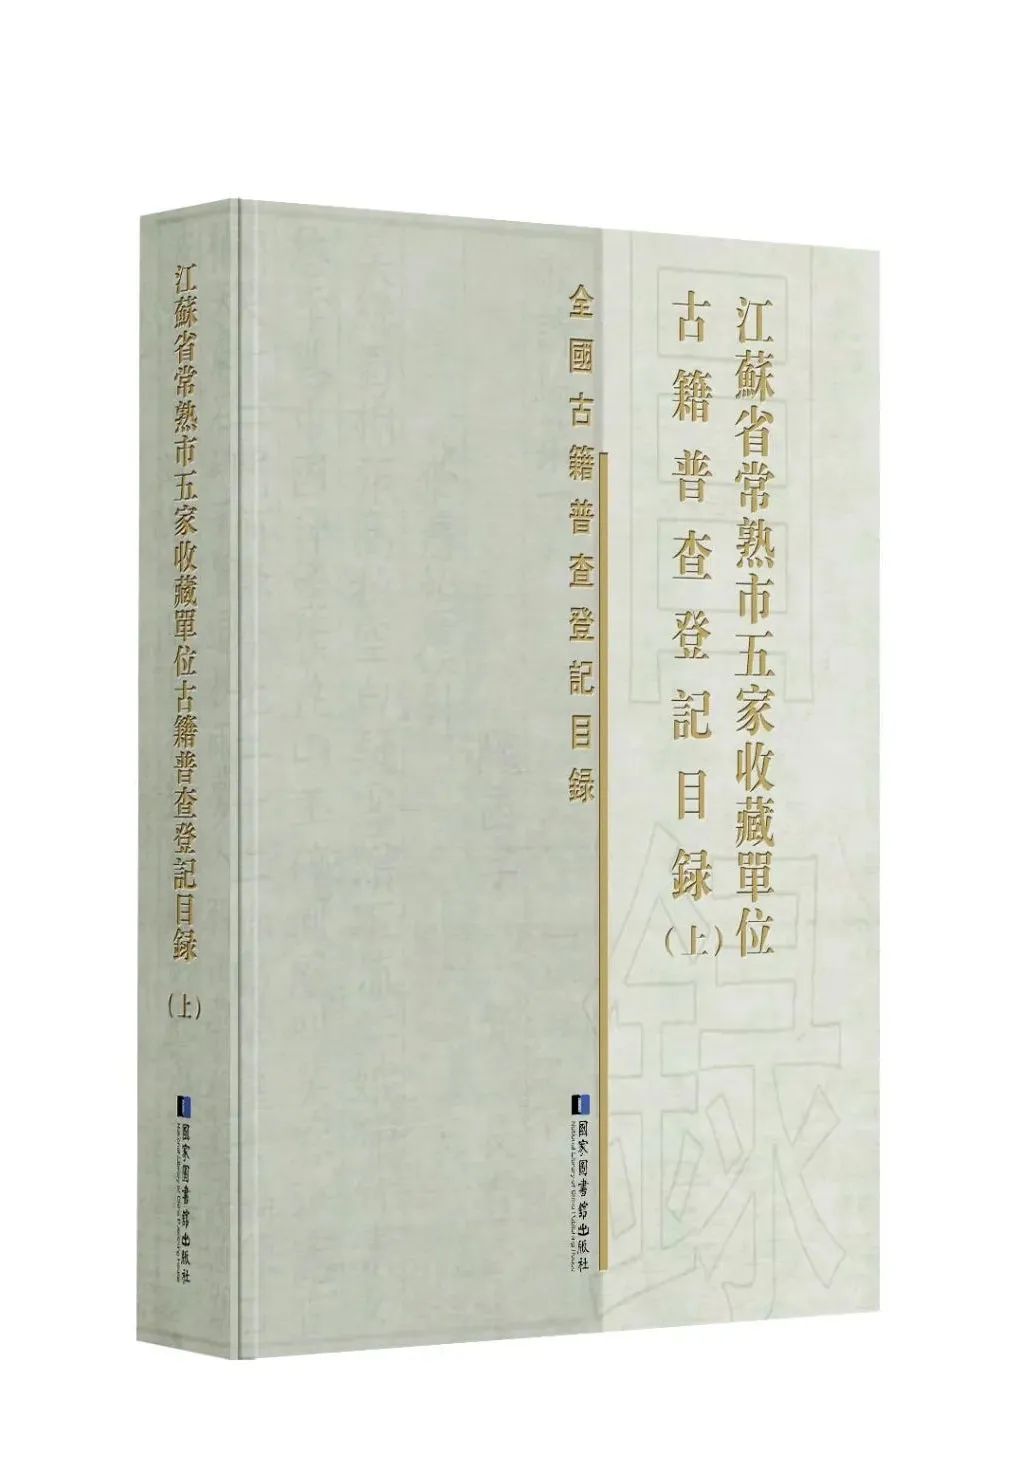 江苏省常熟市五家收藏单位古籍普查登记目录 全二册